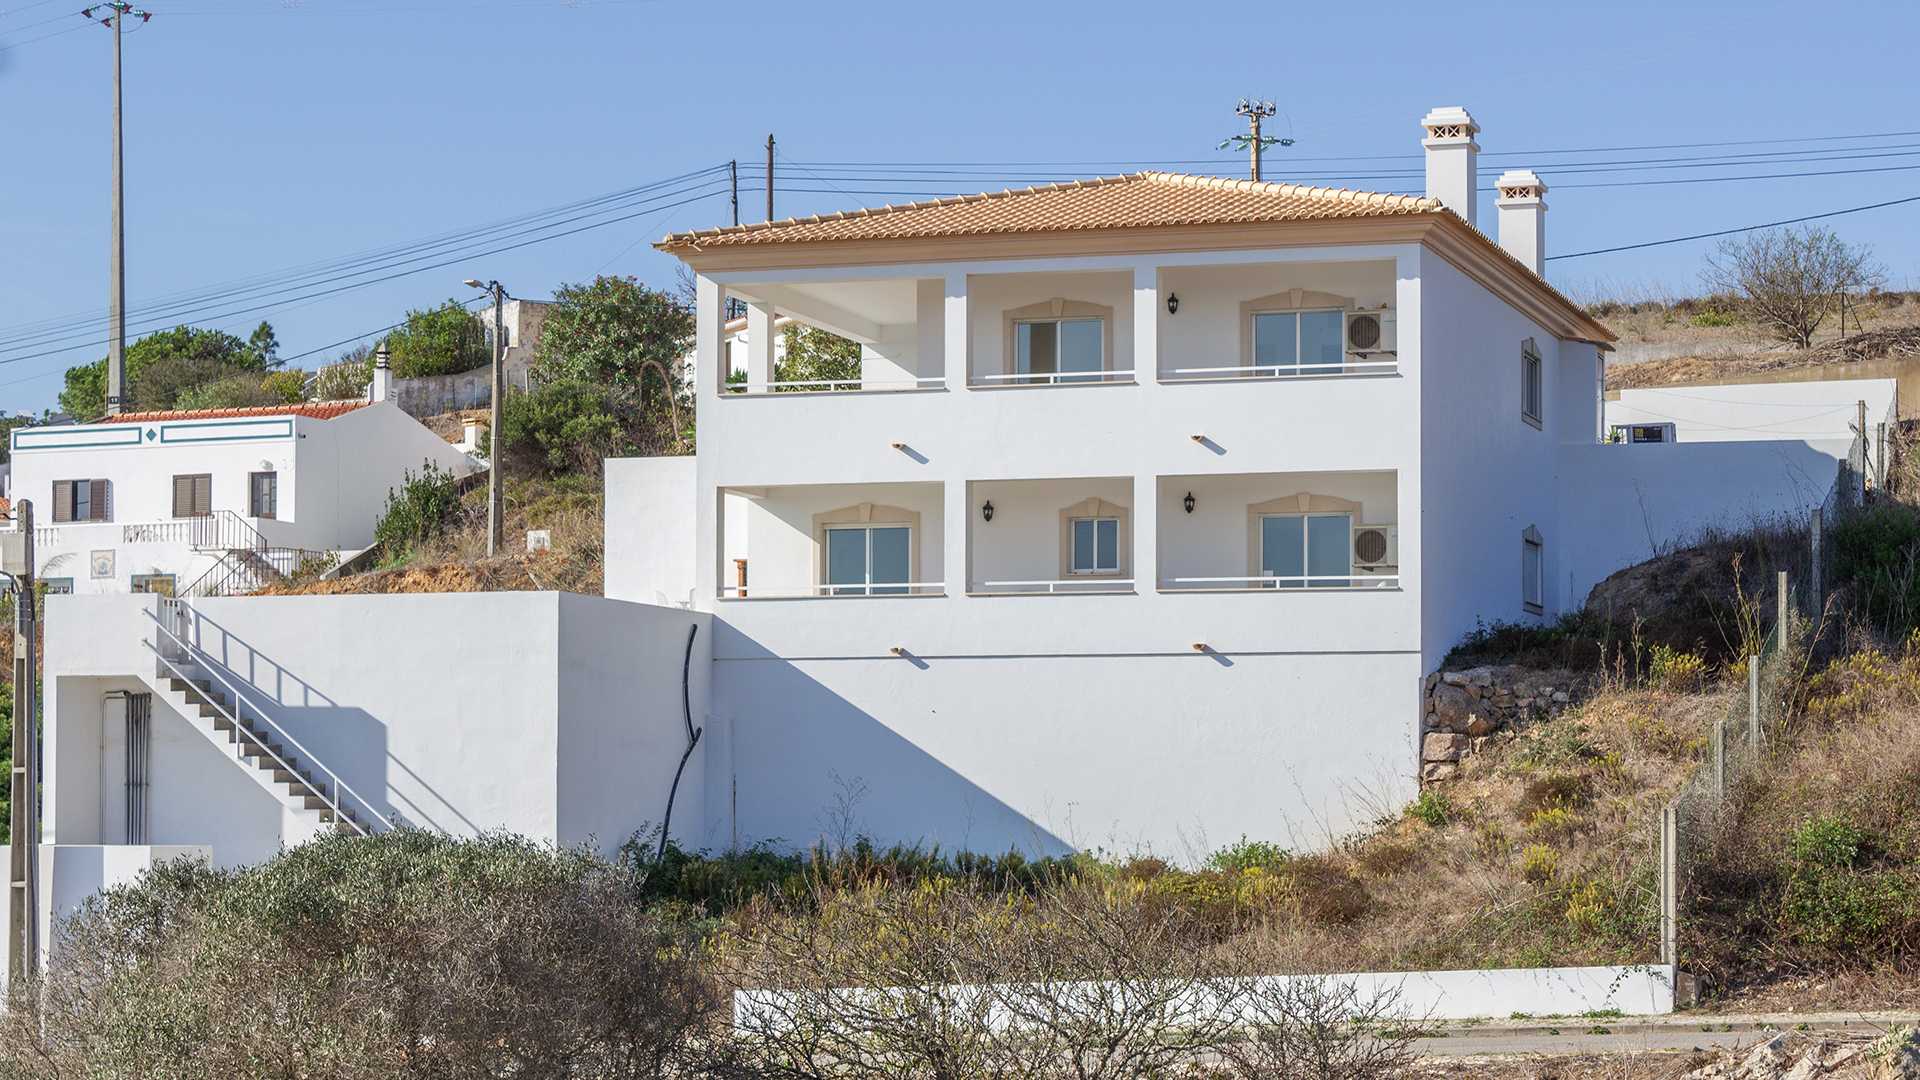 Villa moderne de 4 chambres avec piscine dans un hameau tranquille de l'ouest de l'Algarve. | LG2176 Propriété moderne de 4 chambres bien entretenue dans un hameau rural tranquille de l'ouest de l'Algarve avec des vues fantastiques sur la campagne. Cette villa orientée sud-est dispose de terrasses enveloppantes et d'un grand espace extérieur avec une piscine de bonne taille. La plage la plus proche est à seulement 2 minutes en voiture !